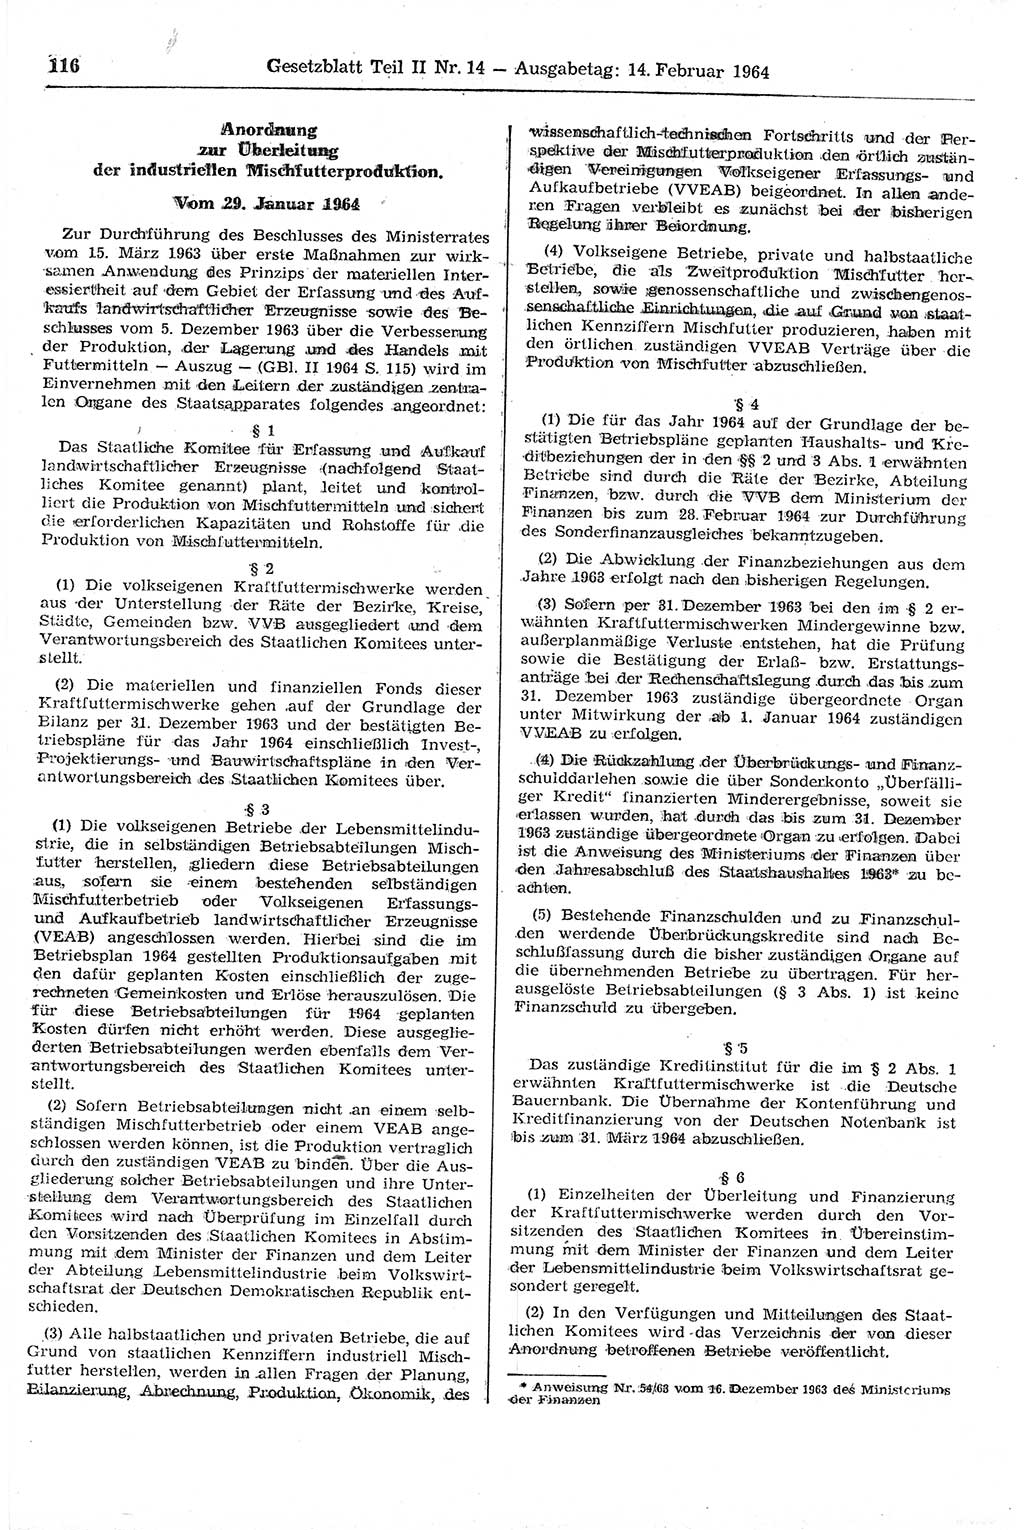 Gesetzblatt (GBl.) der Deutschen Demokratischen Republik (DDR) Teil ⅠⅠ 1964, Seite 116 (GBl. DDR ⅠⅠ 1964, S. 116)